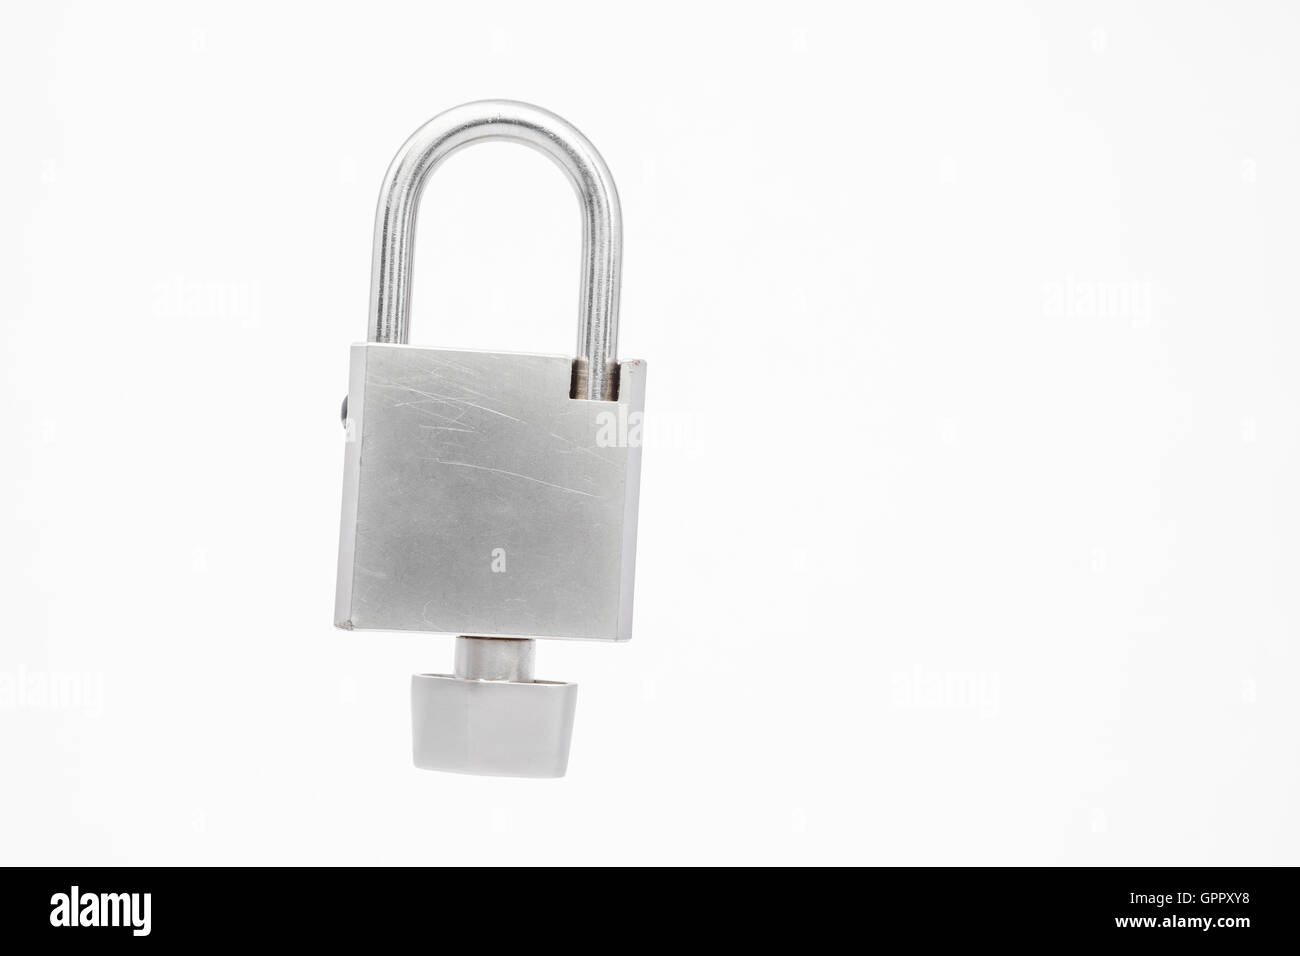 Le cadenas sans clé qui n'importe qui peut ouvrir et fermer Photo Stock -  Alamy